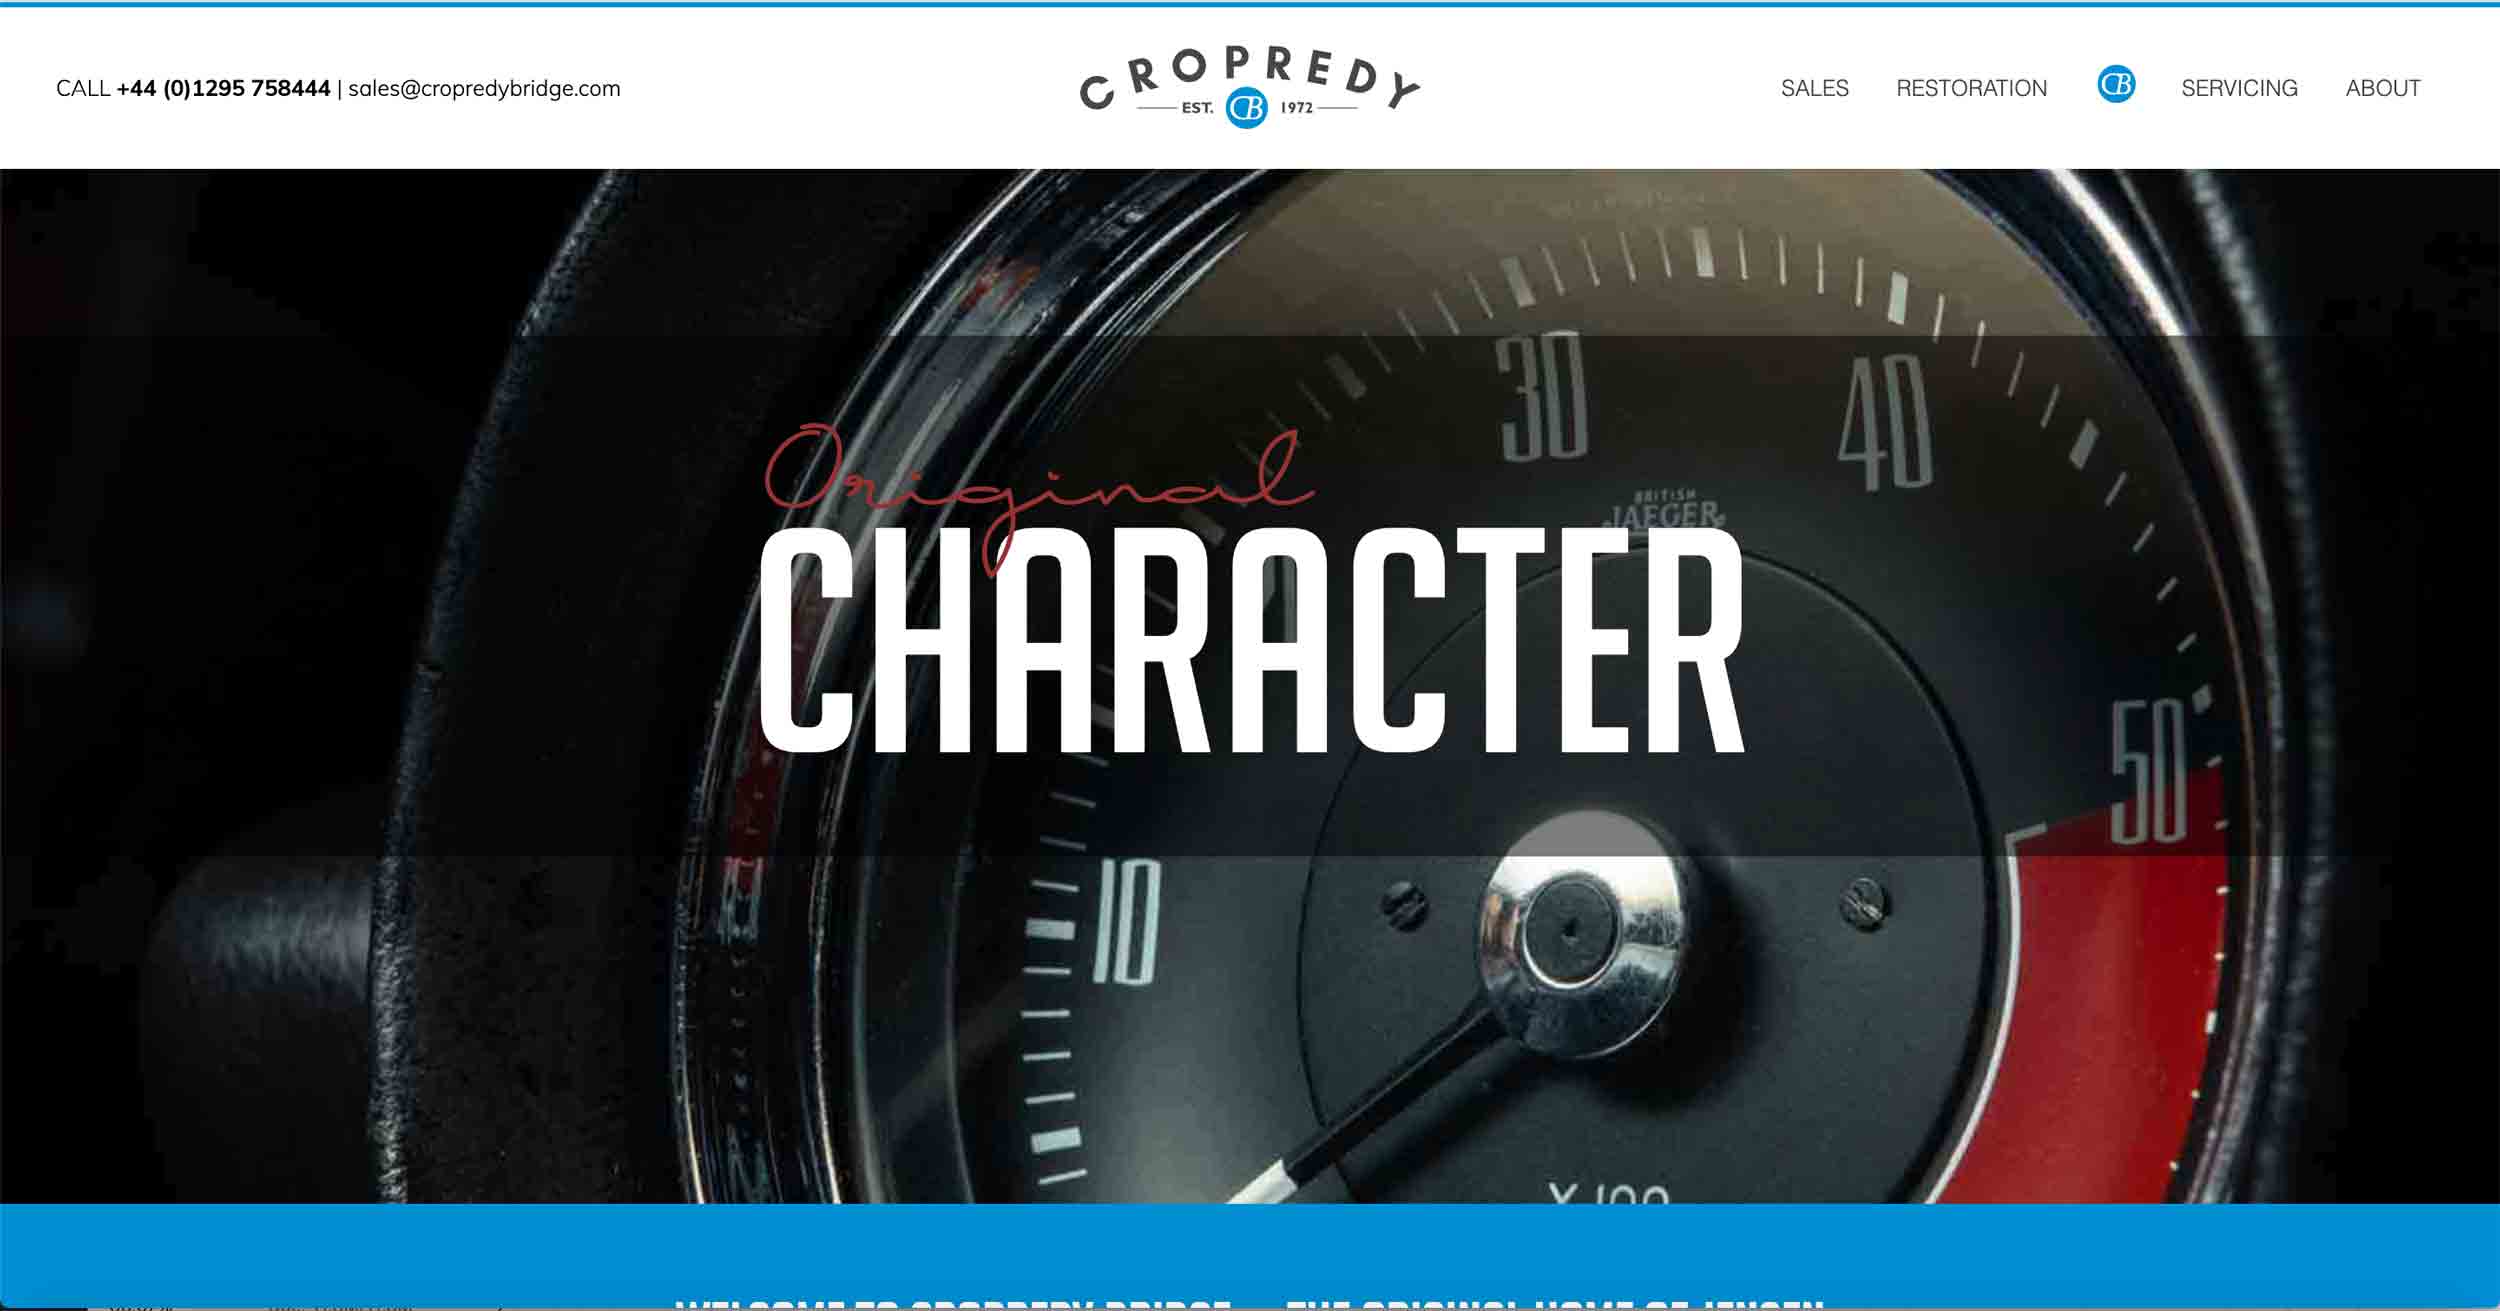 copredy bridge garage website development car restoration homepage design header